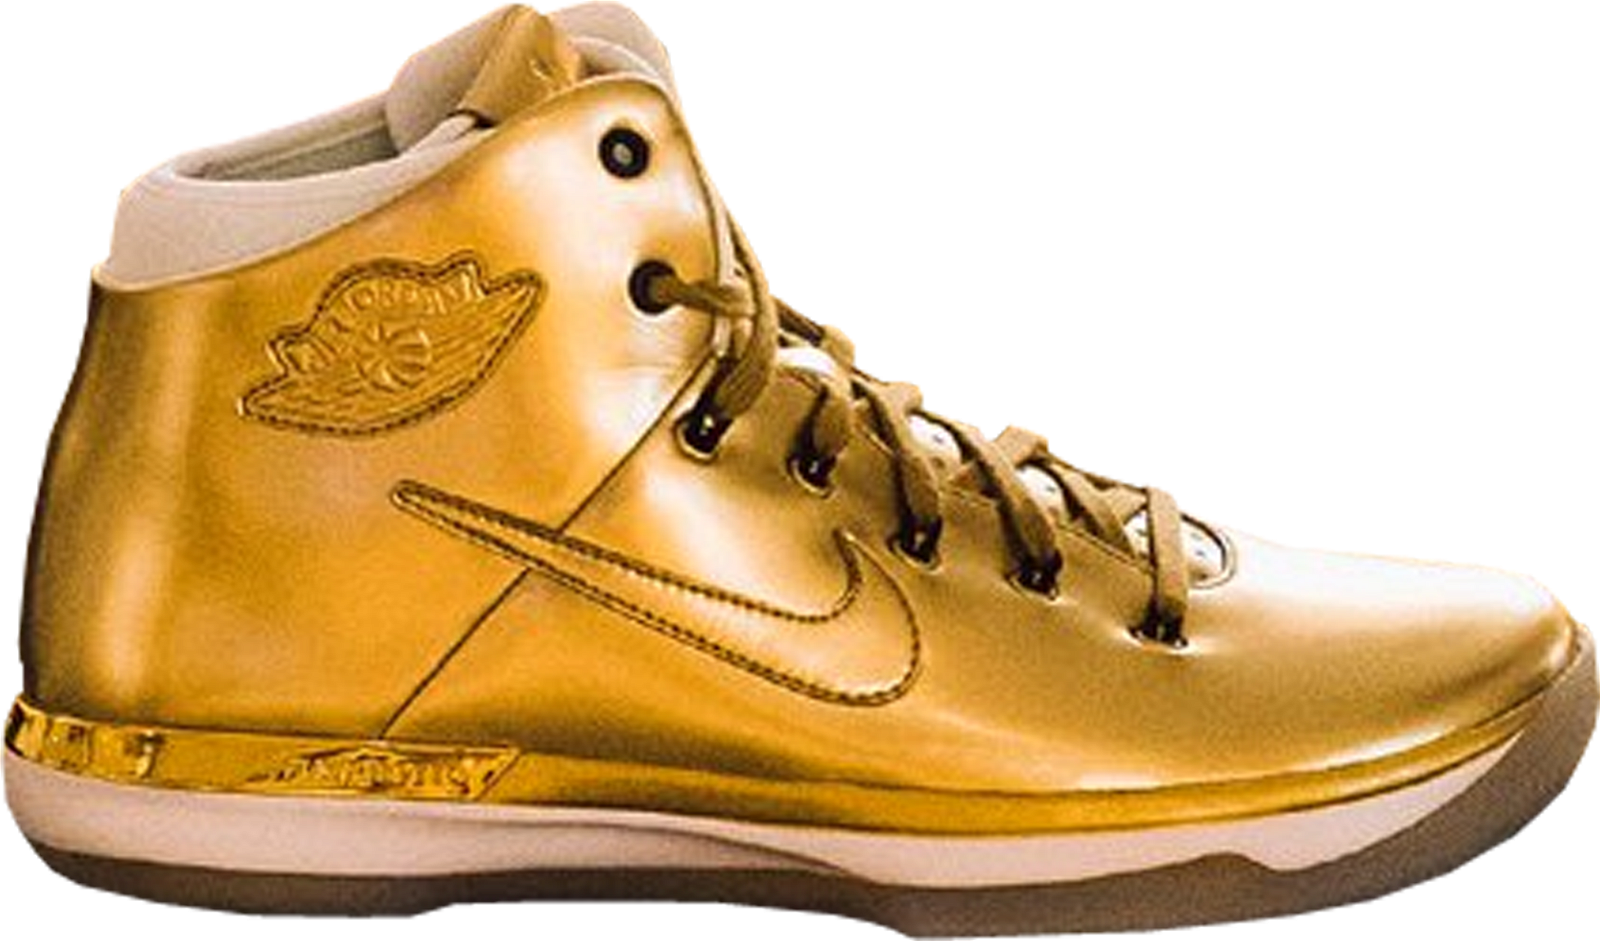 Jordan XXX1 Gold All Star (2017) sneakers